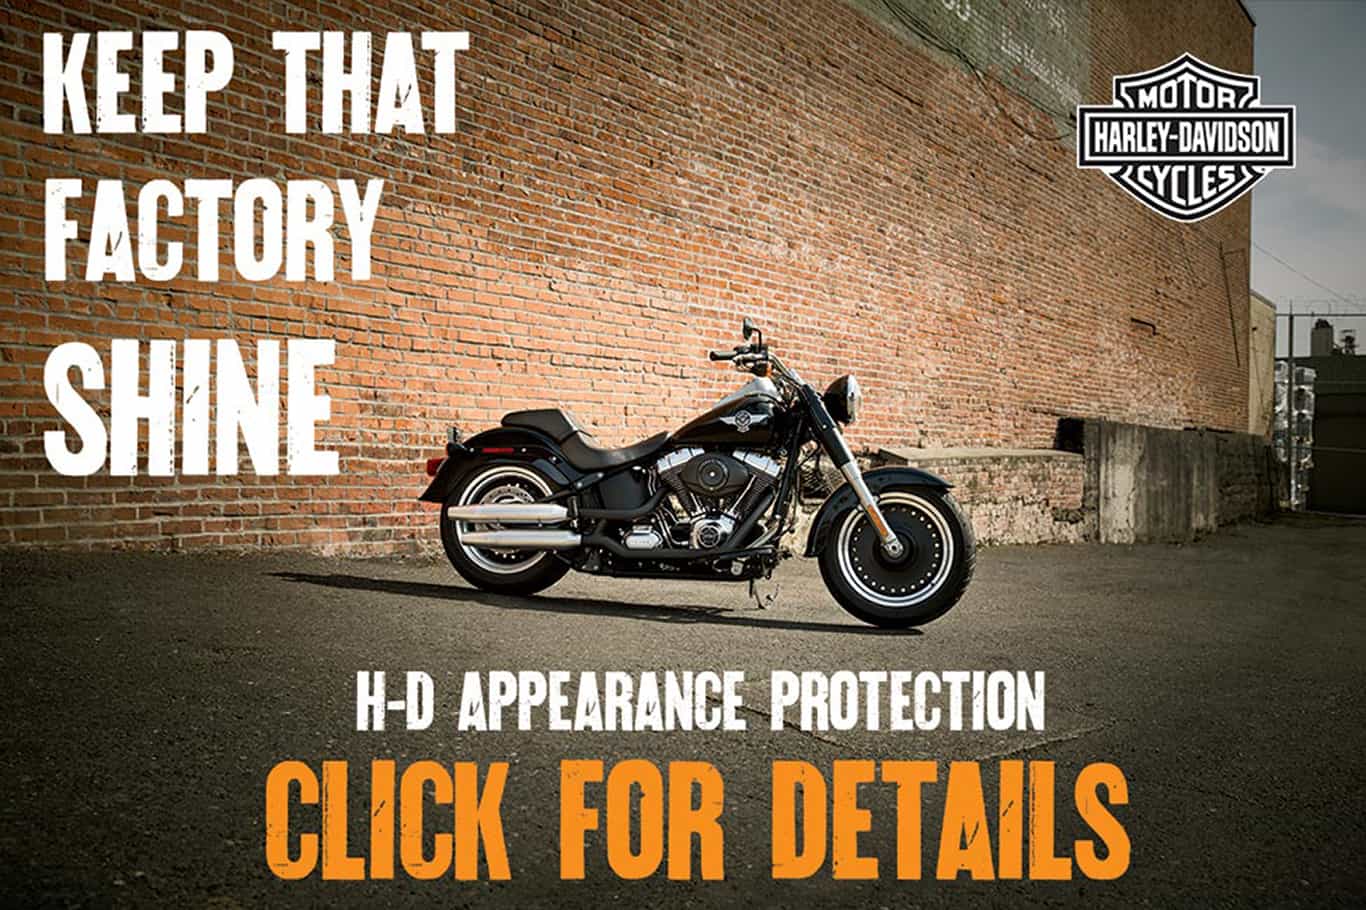 Visit us at Z & M Harley-Davidson.